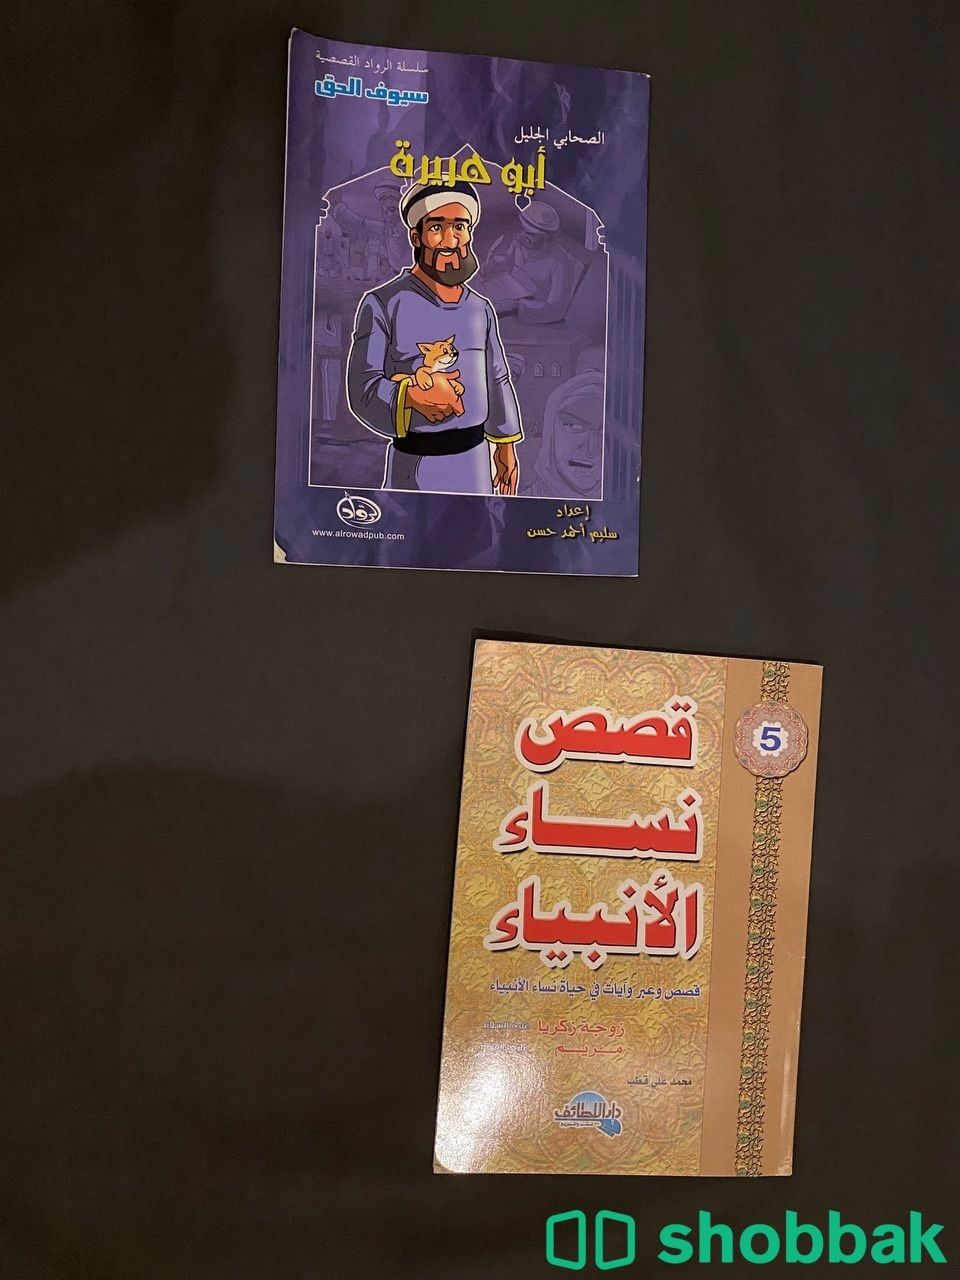 روايات و كتب اطفال و كتب دينيه و قصايد للبيع Shobbak Saudi Arabia